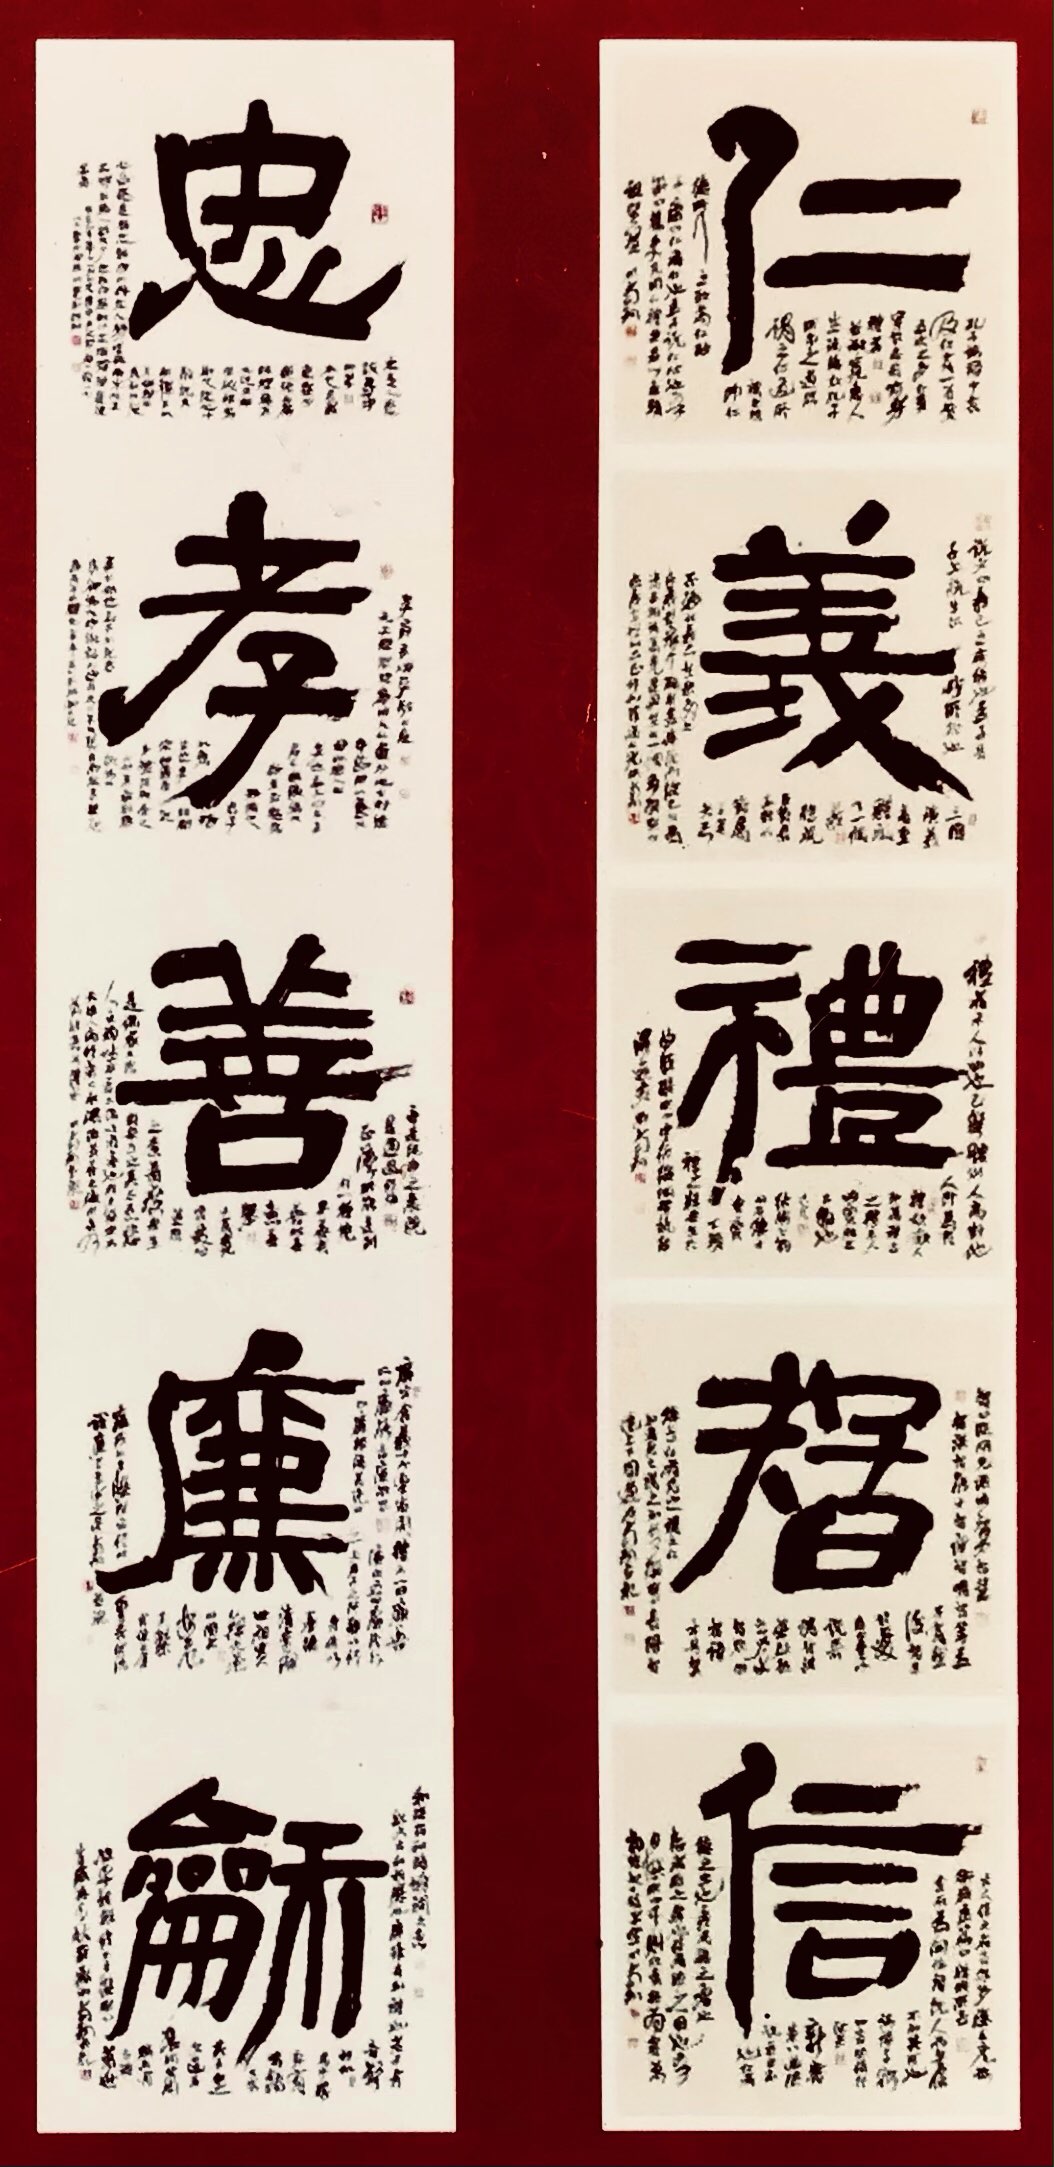 书法漫谈】中国书法的神性特点| 汉字| 汉字书法| 刘锡铜| 大纪元 image